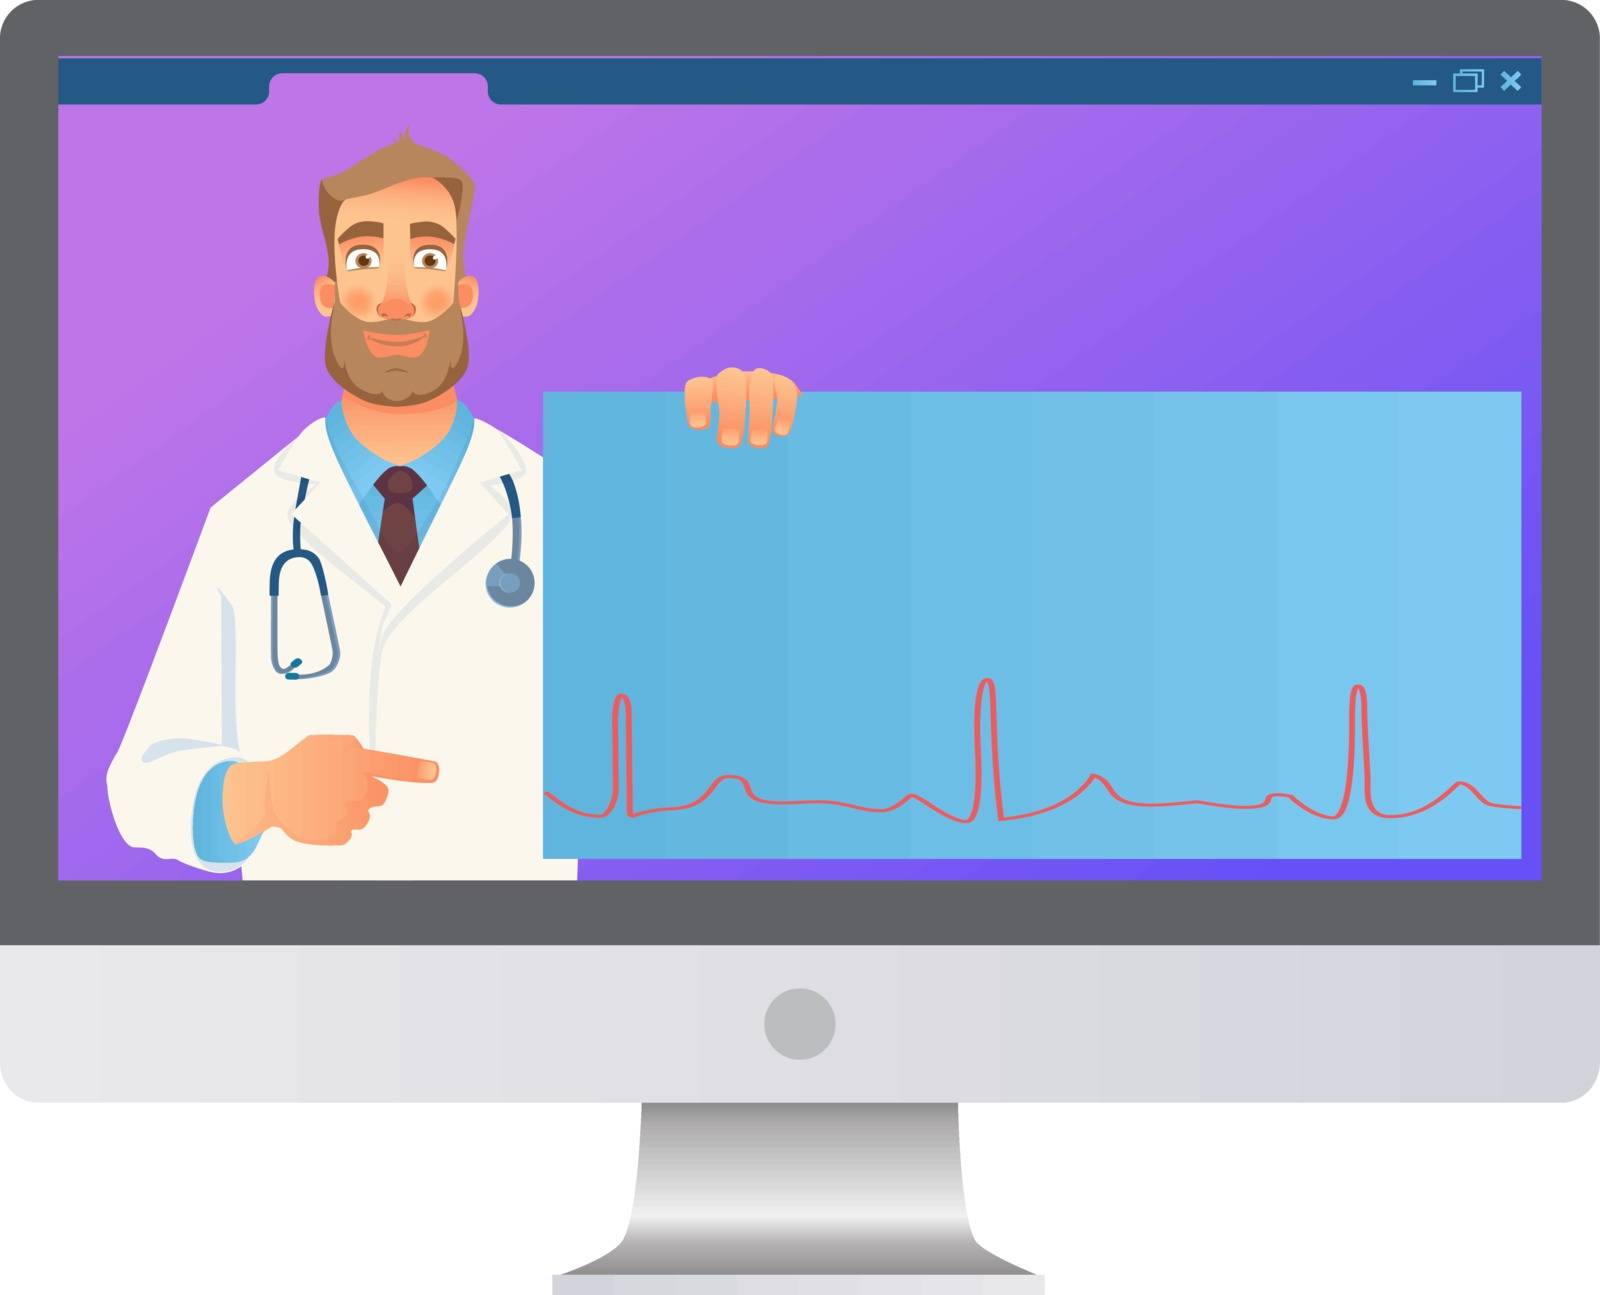 Online medical consultation. Doctor online. Medicine concept. Doctor website vector illustration